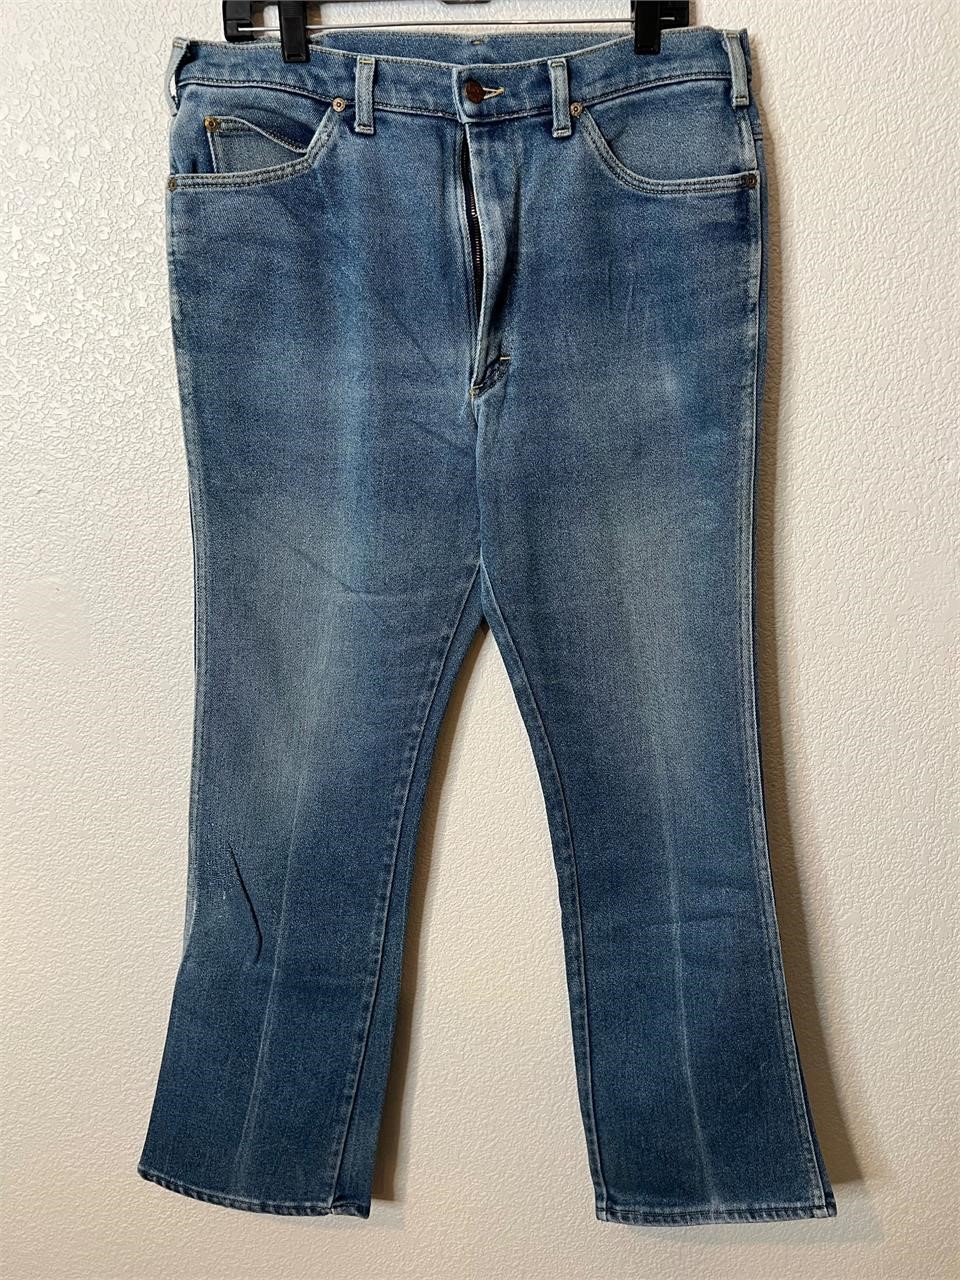 Vintage Lee Denim Jeans 38x34